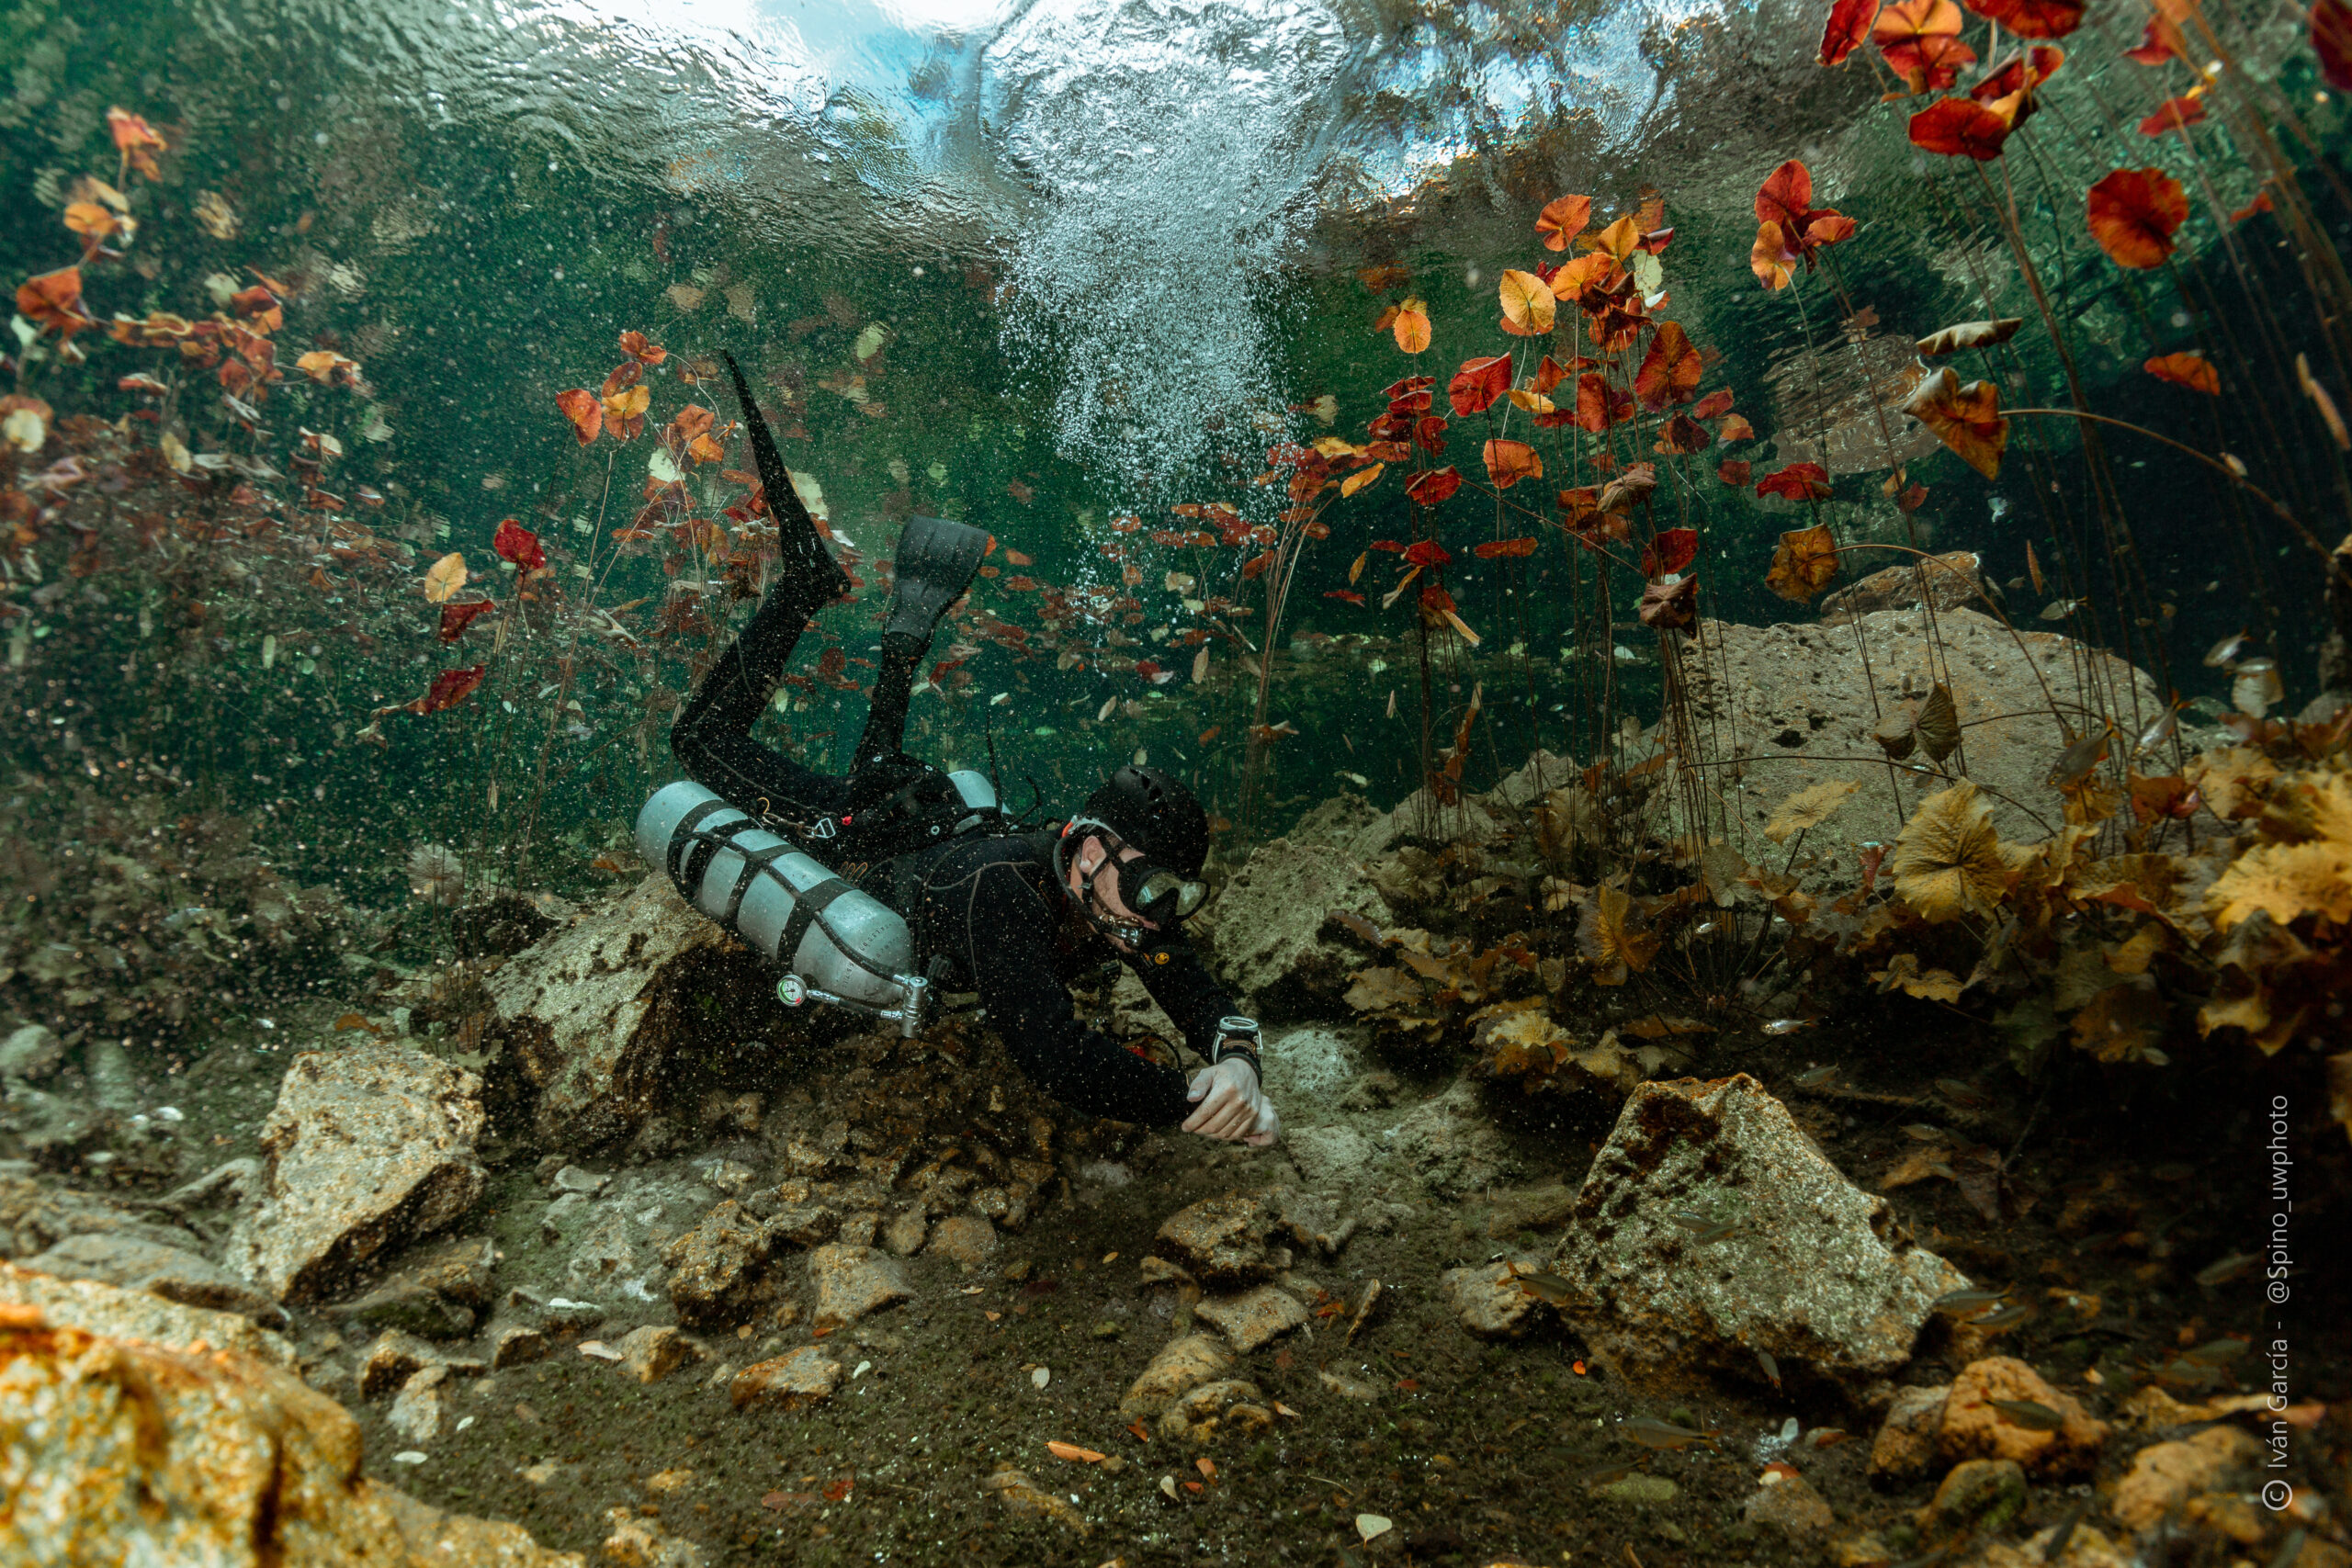 Passionné de Triton Diving au milieu d'un ballet sous-marin de feuilles d'automne dans les eaux cristallines du Cenote Nicte Ha